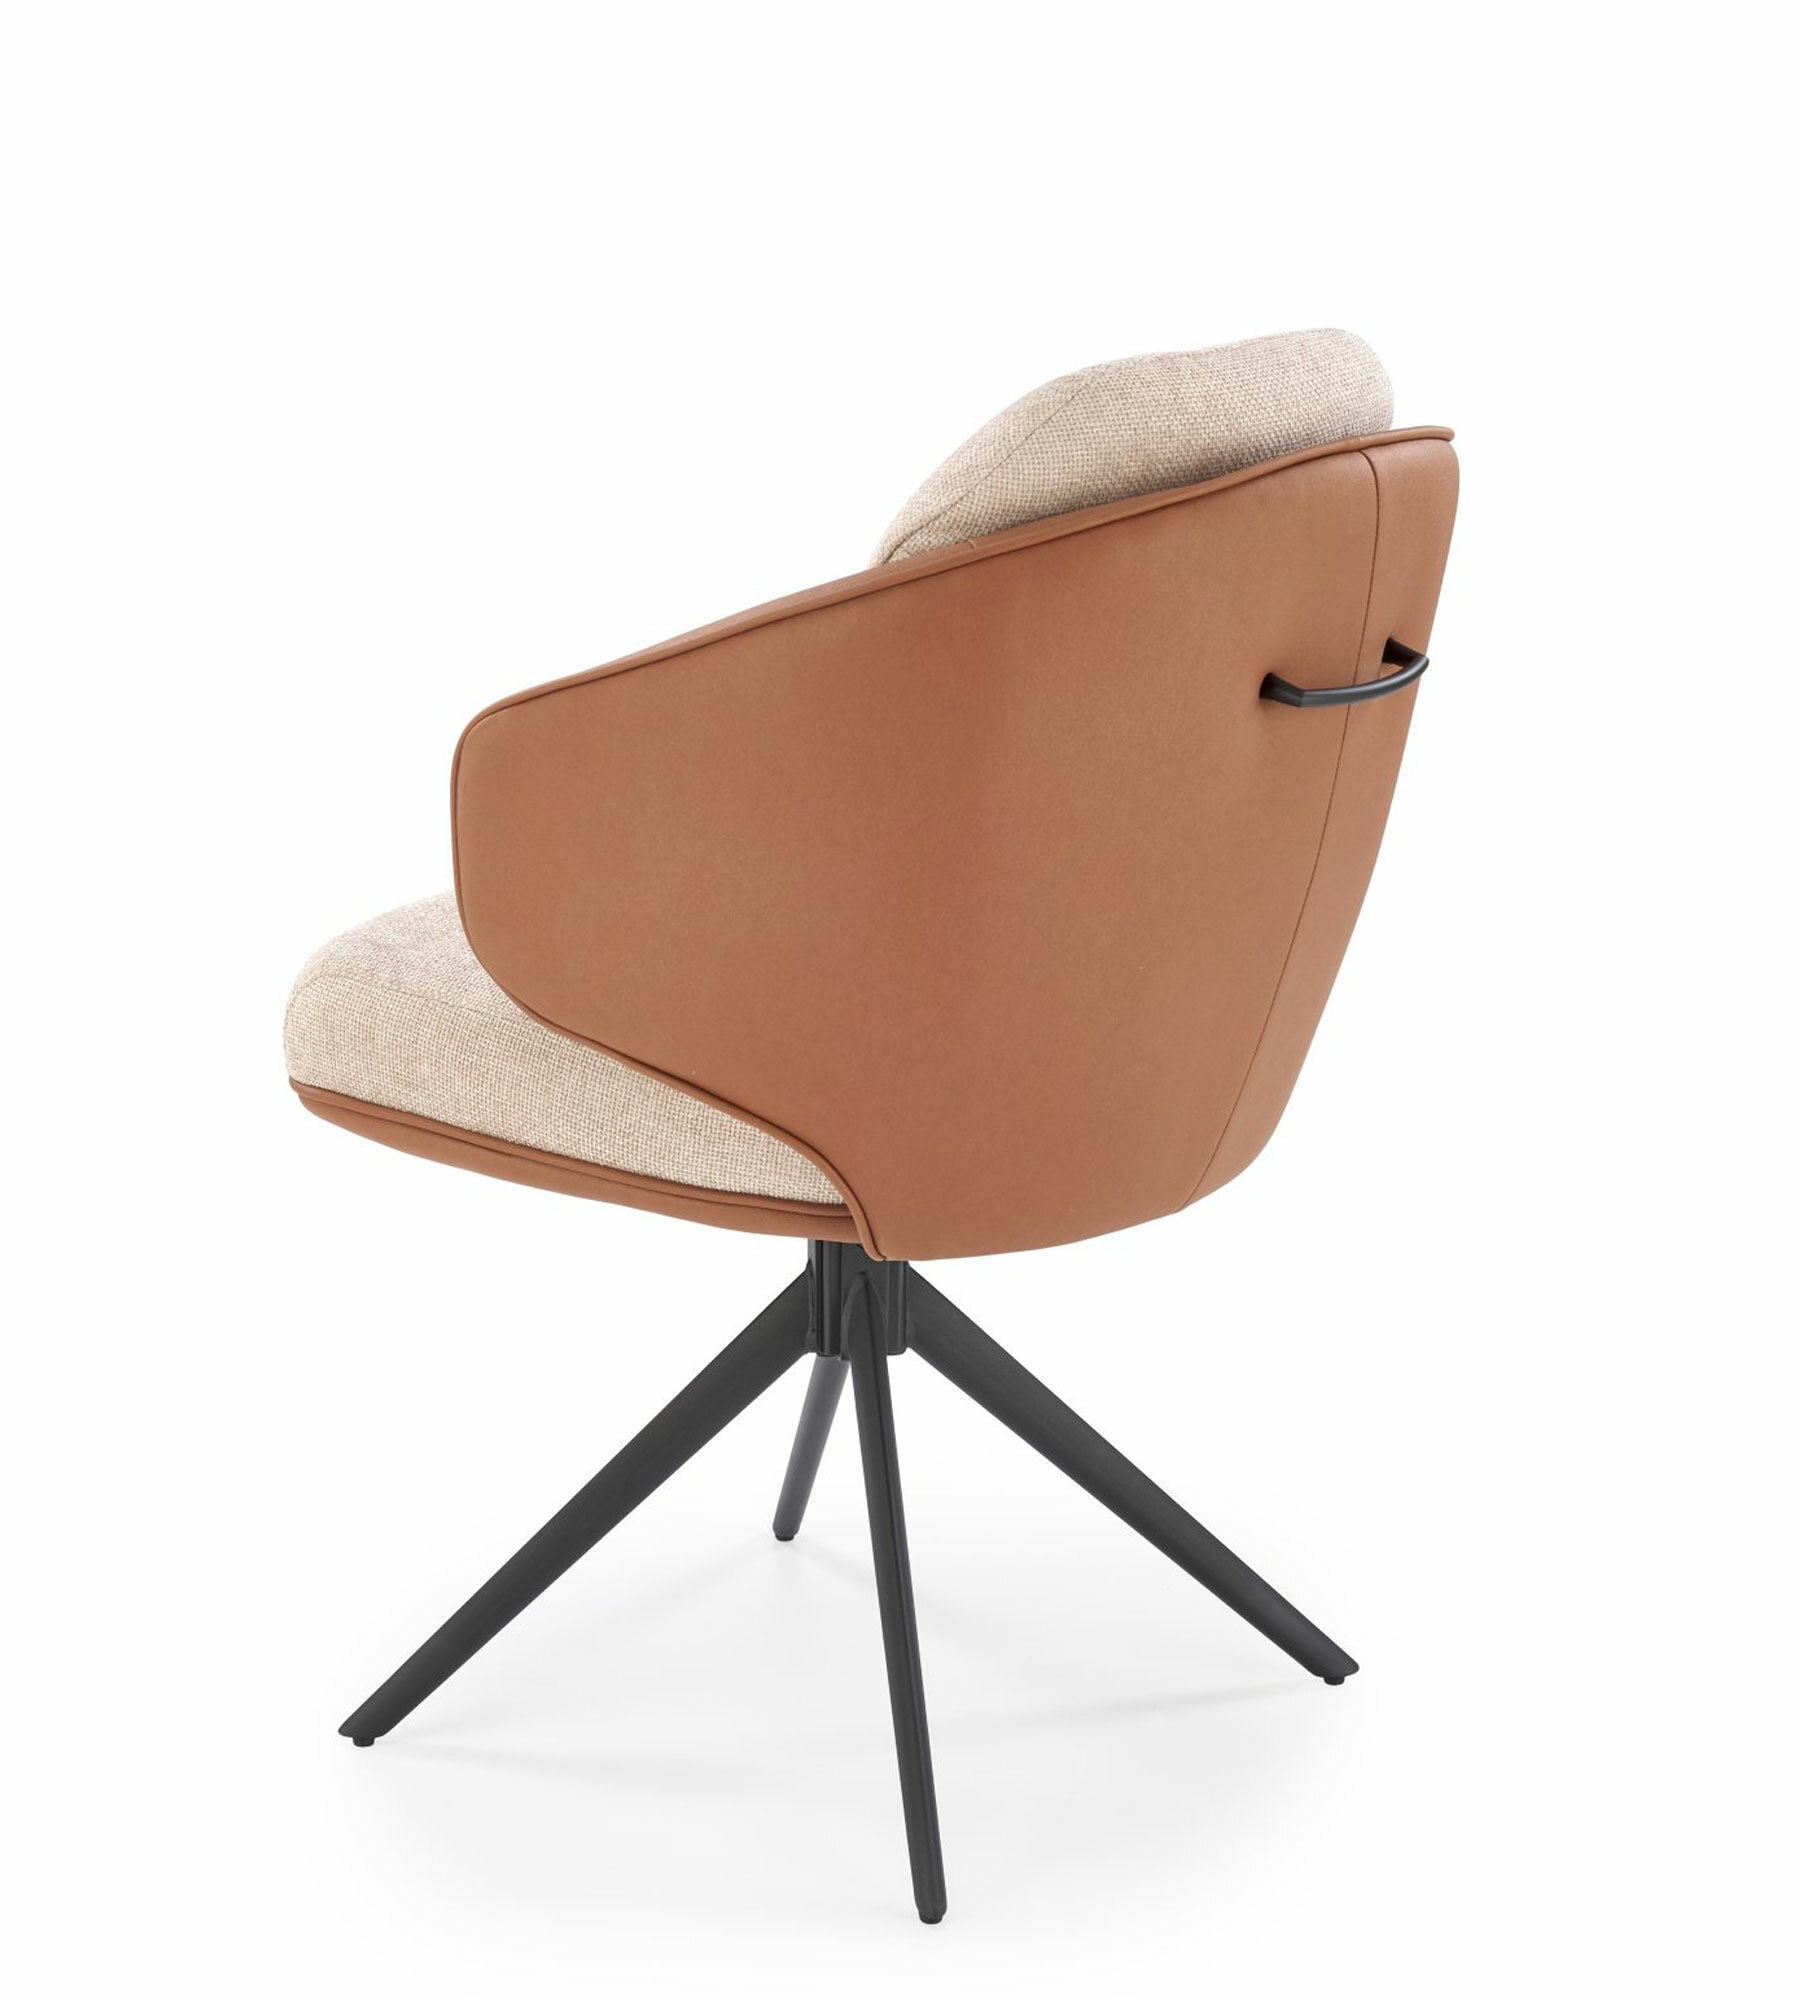 K554 krzesło brązowy / beżowy z funkcją obrotu